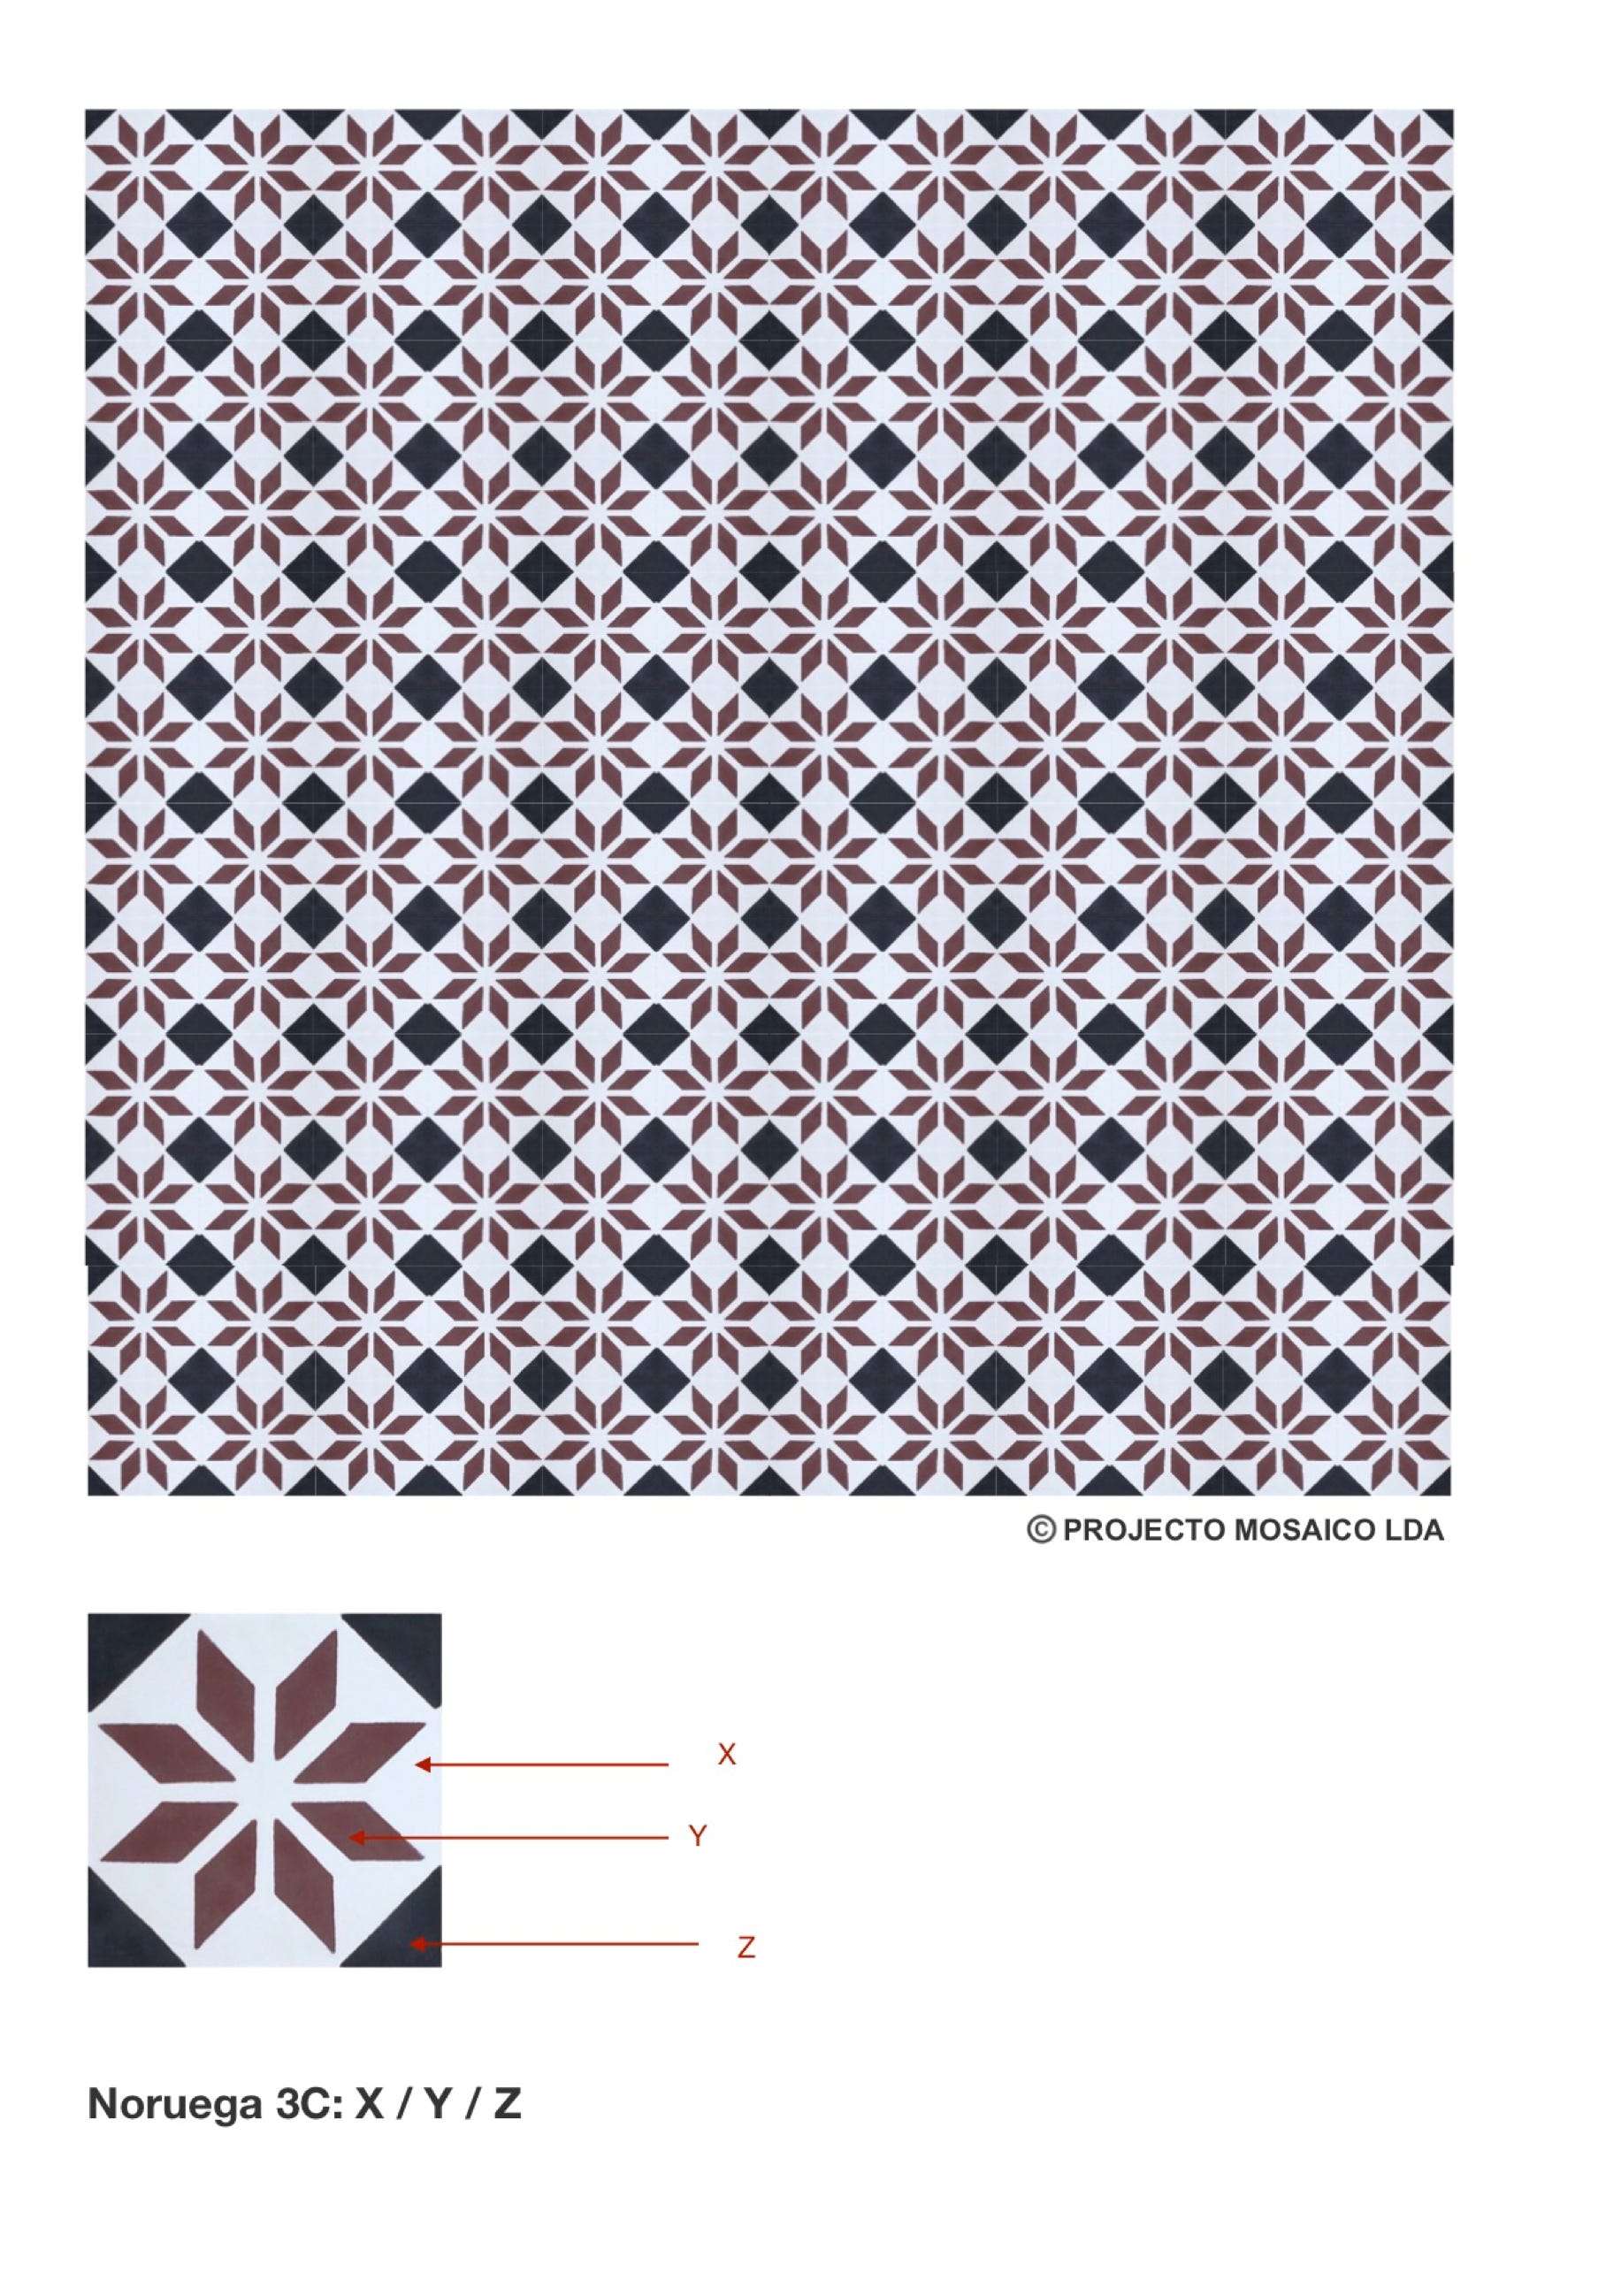 illustração de aplicação do mosaico hidráulico ref: Noruega 3C